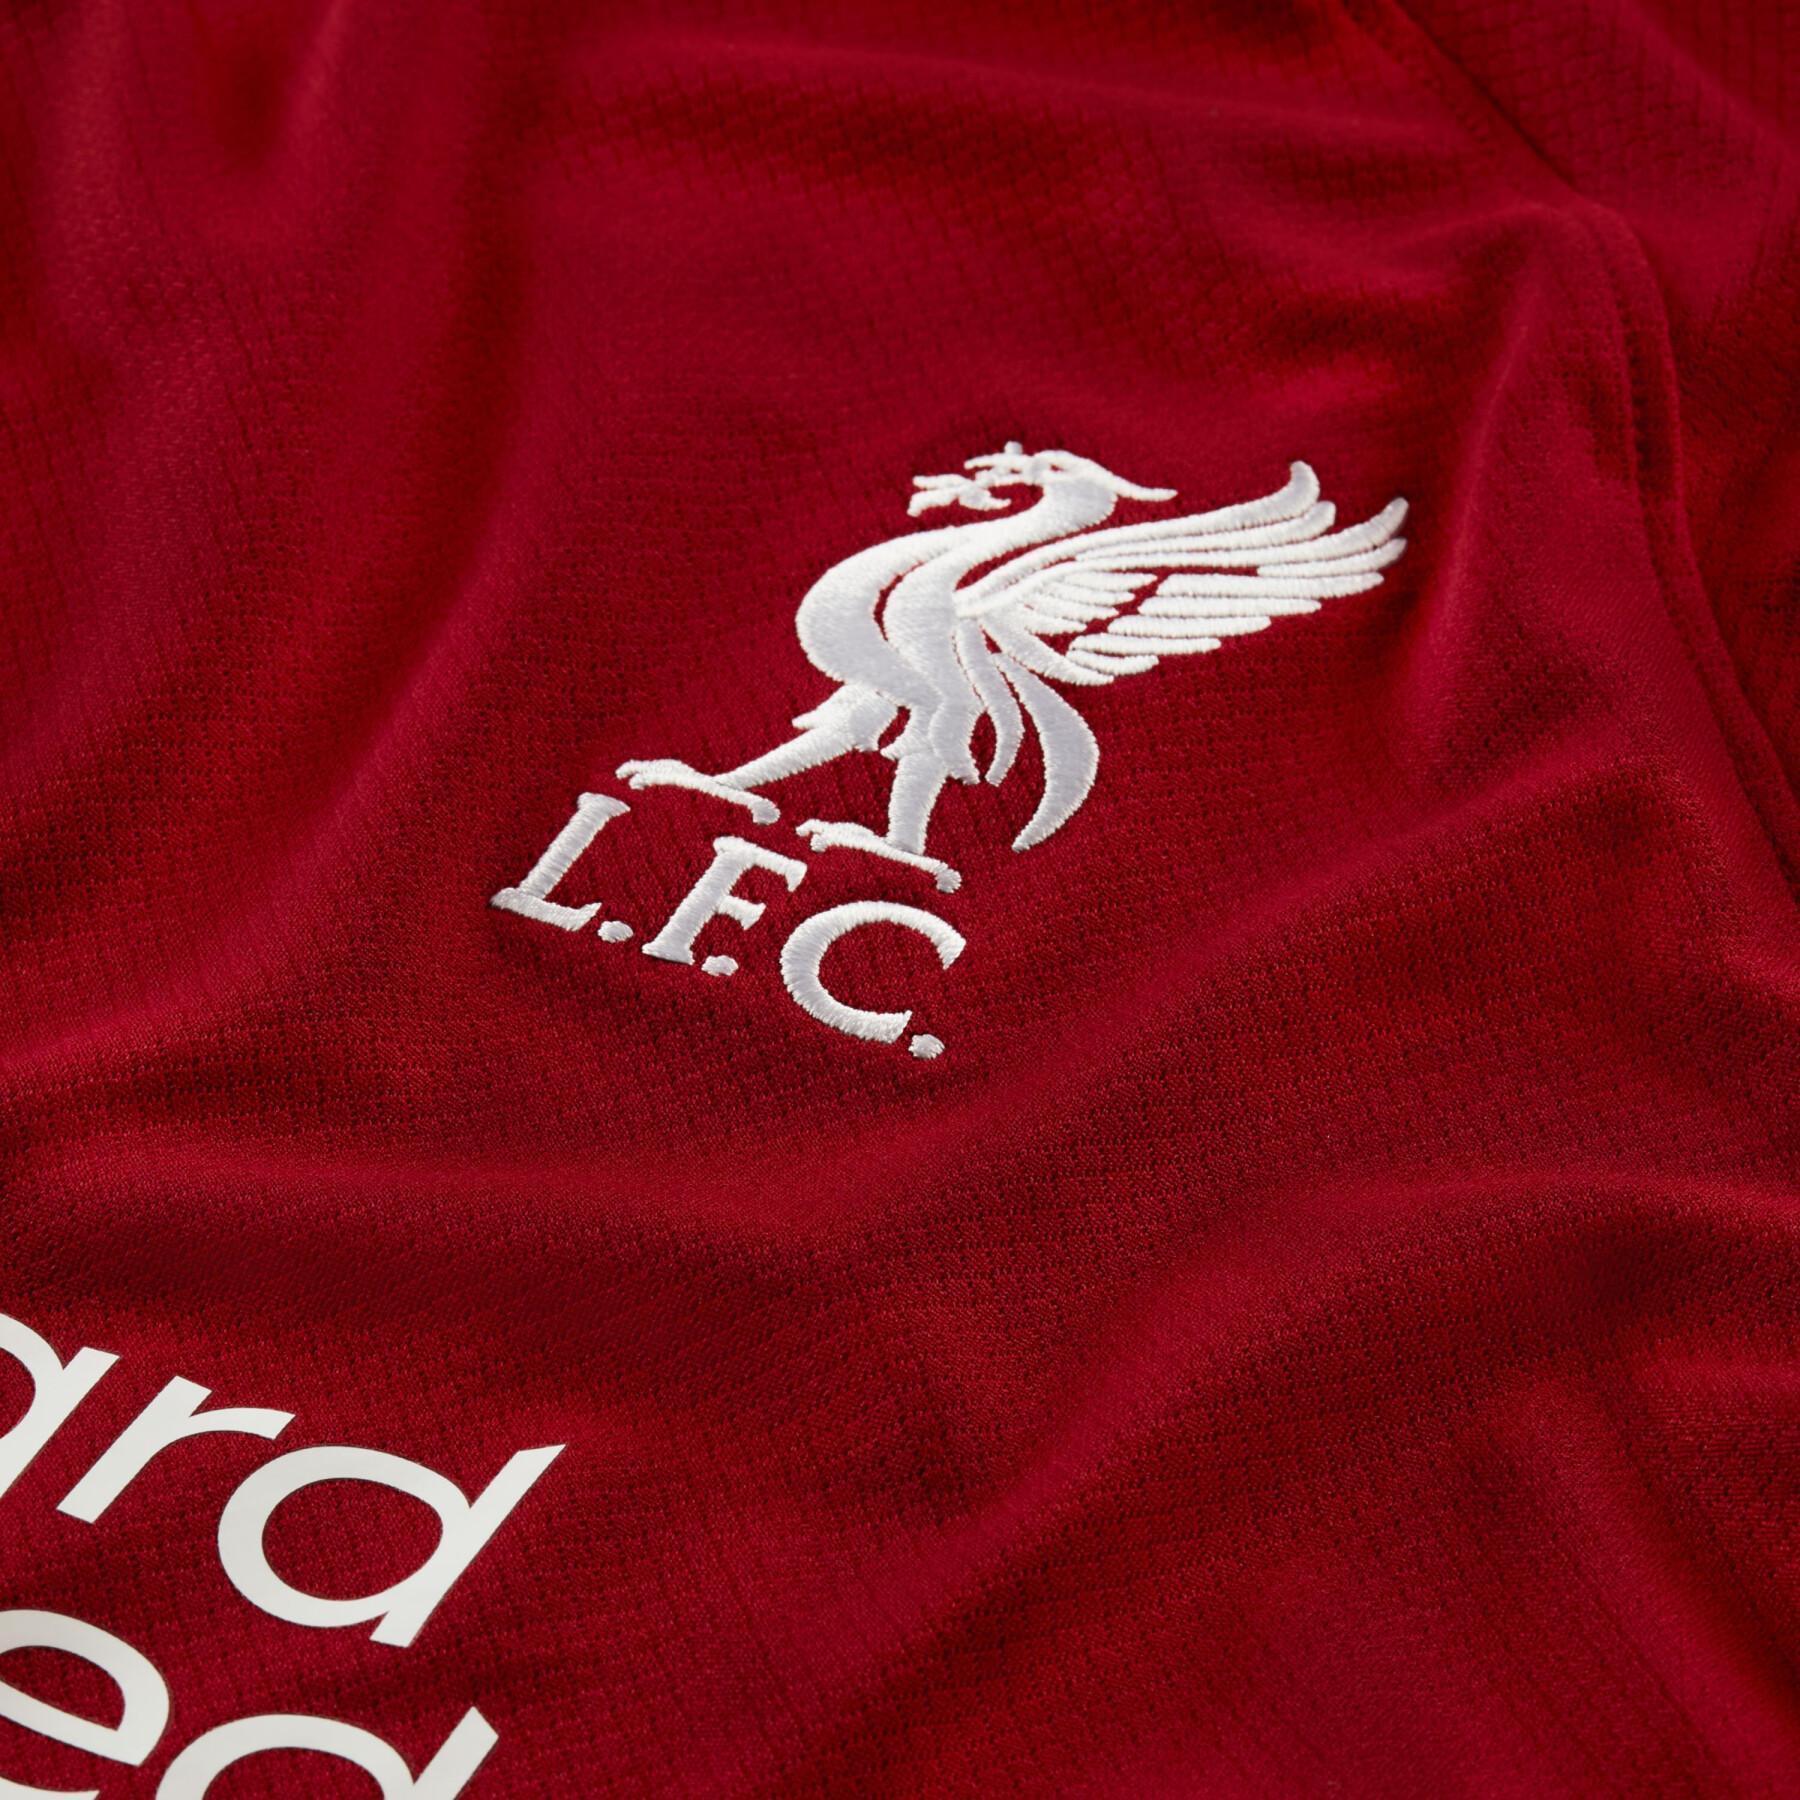 Home jersey Liverpool FC 2022/23 - Liverpool FC - Premier League - Fan Shop